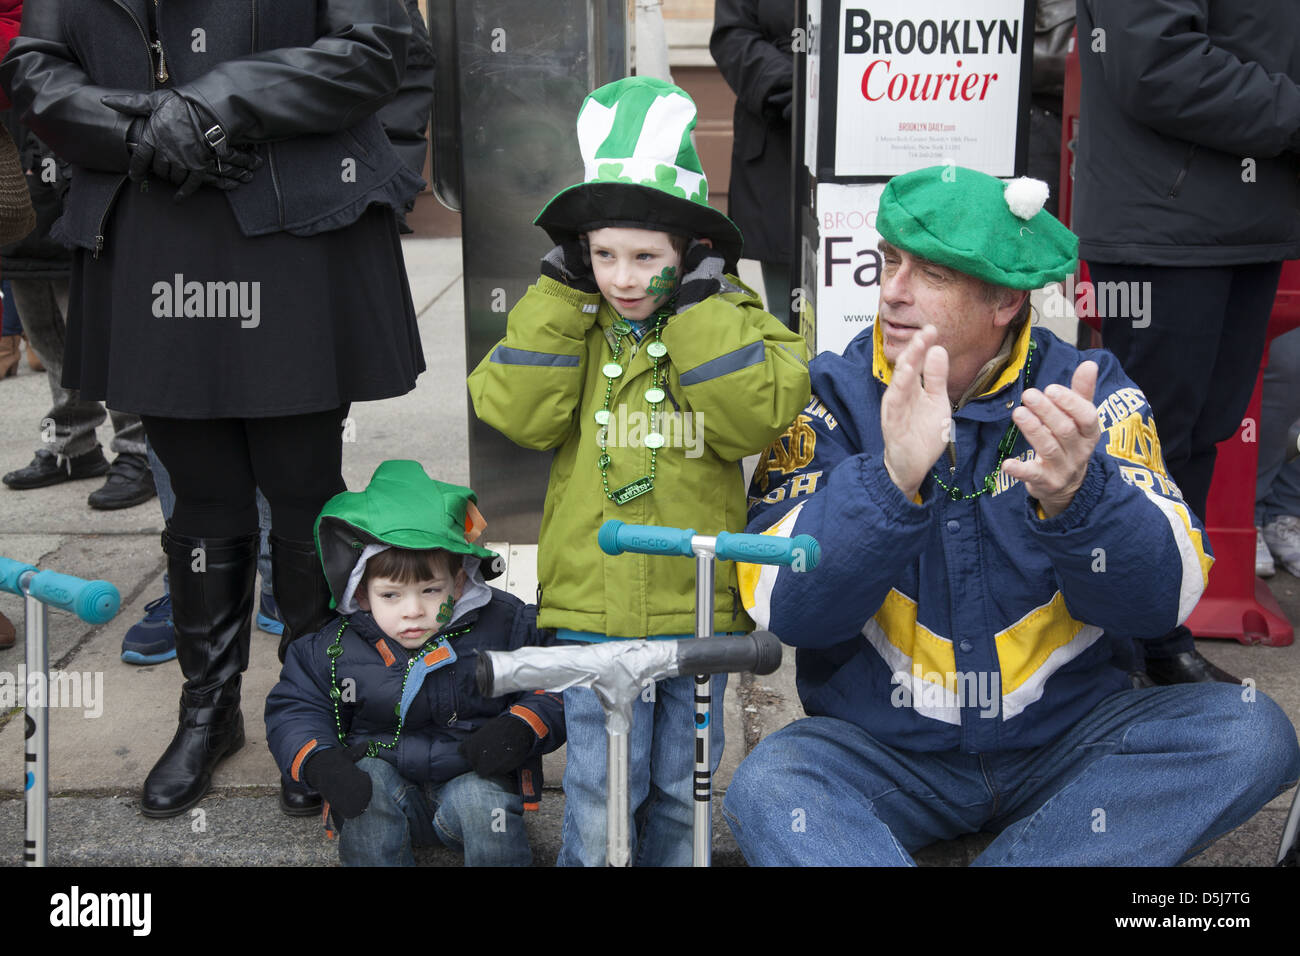 Die jährliche irische Parade in Park Slope, Brooklyn, NY in diesem Jahr wurde am St. Patricks Day, 17. März gefeiert. Stockfoto